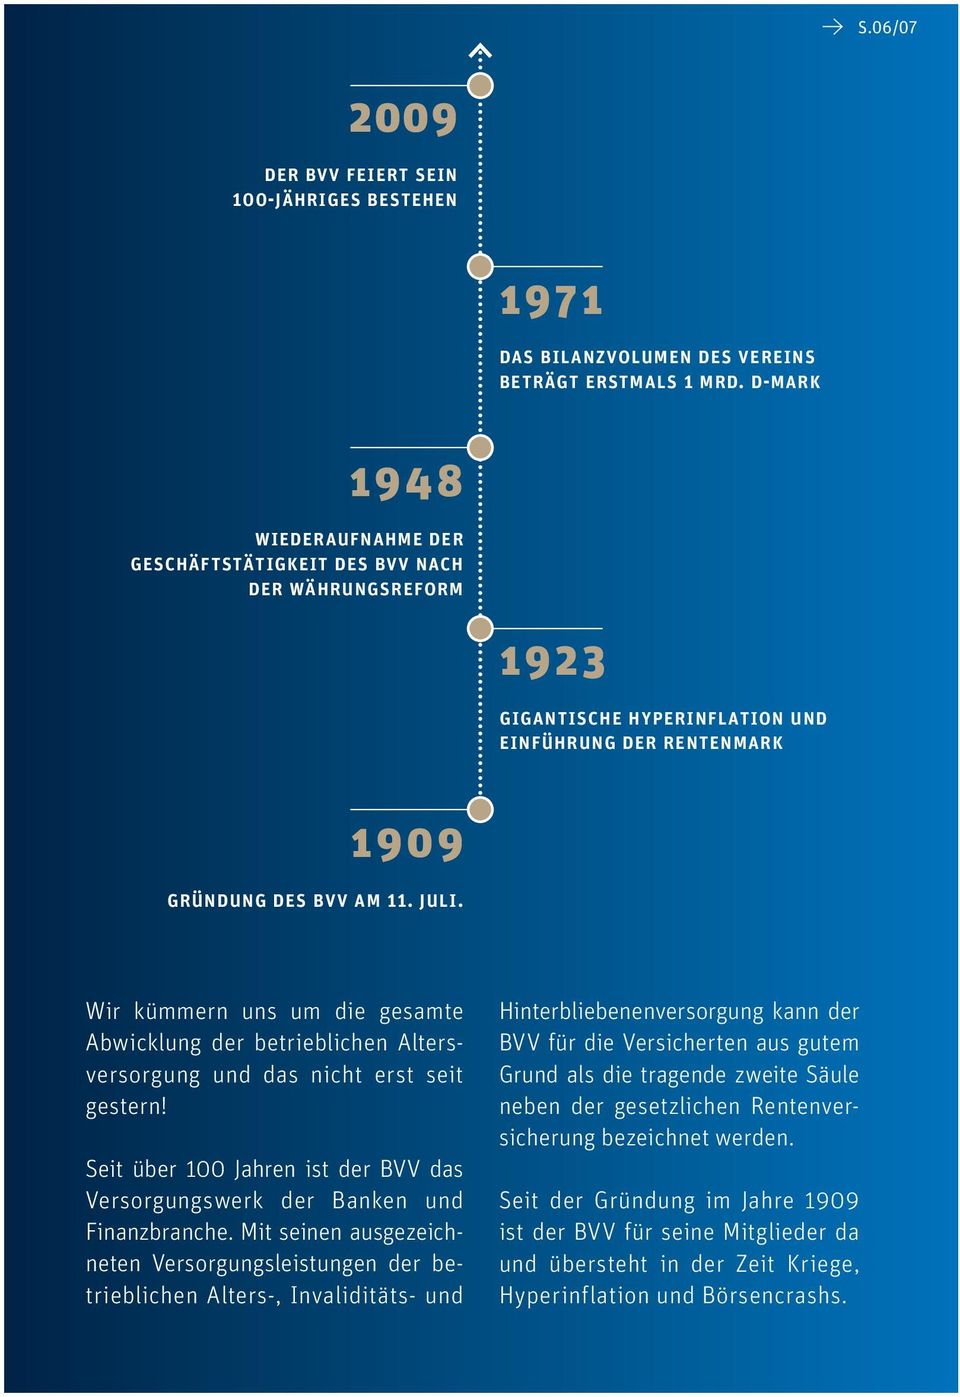 Wir kümmern uns um die gesamte Abwicklung der betrieblichen Altersversorgung und das nicht erst seit gestern! Seit über 100 Jahren ist der BVV das Versorgungswerk der Banken und Finanzbranche.